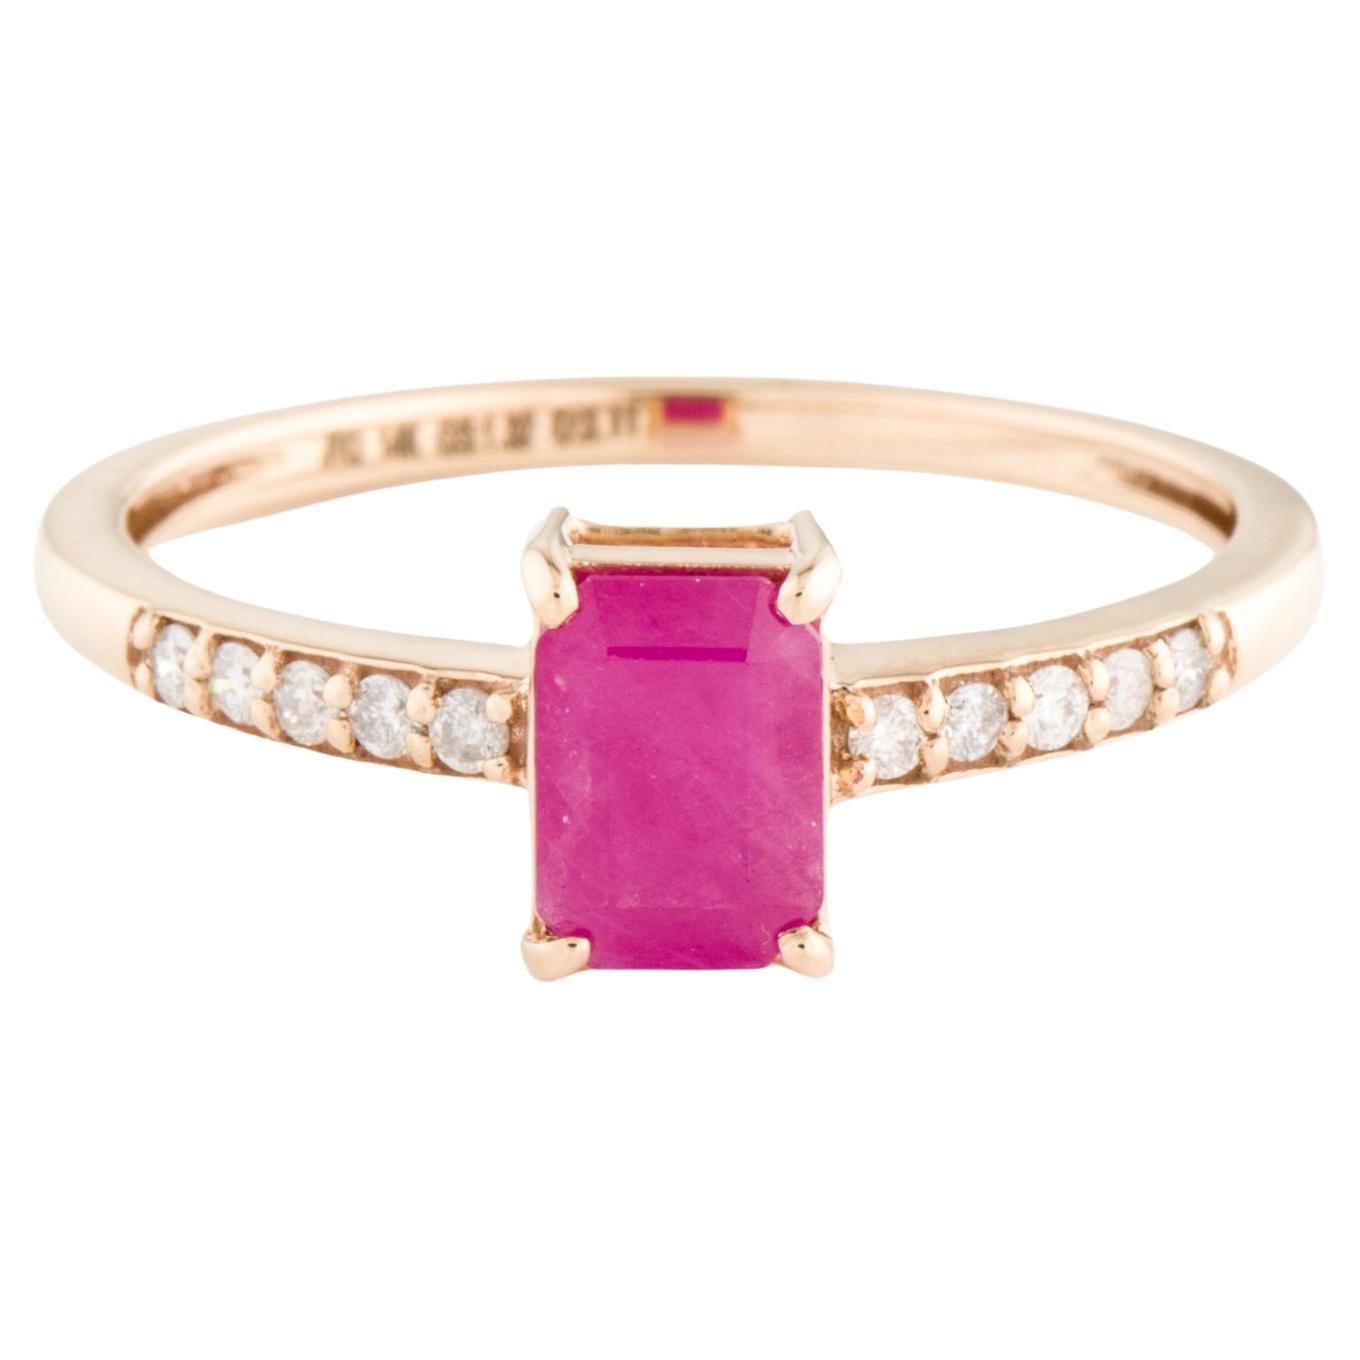 Dazzling 14K Ruby & Diamond Cocktail Ring - Size 8.75 - Fine Statement Jewelry